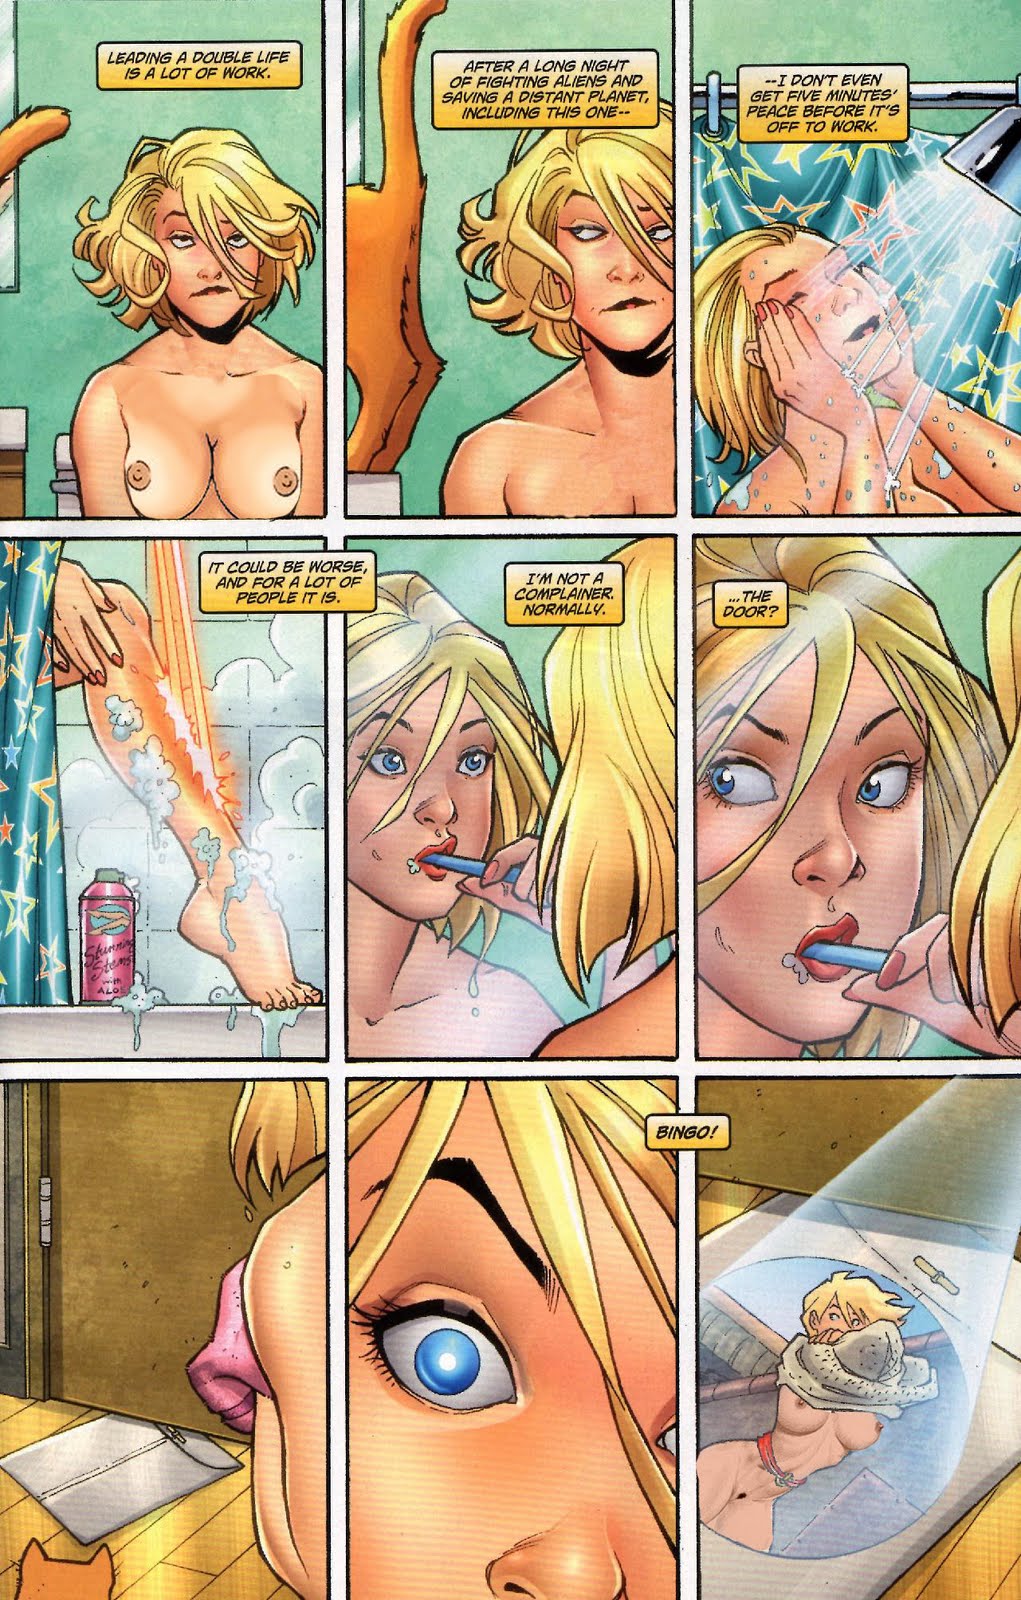 Comic book girl naked